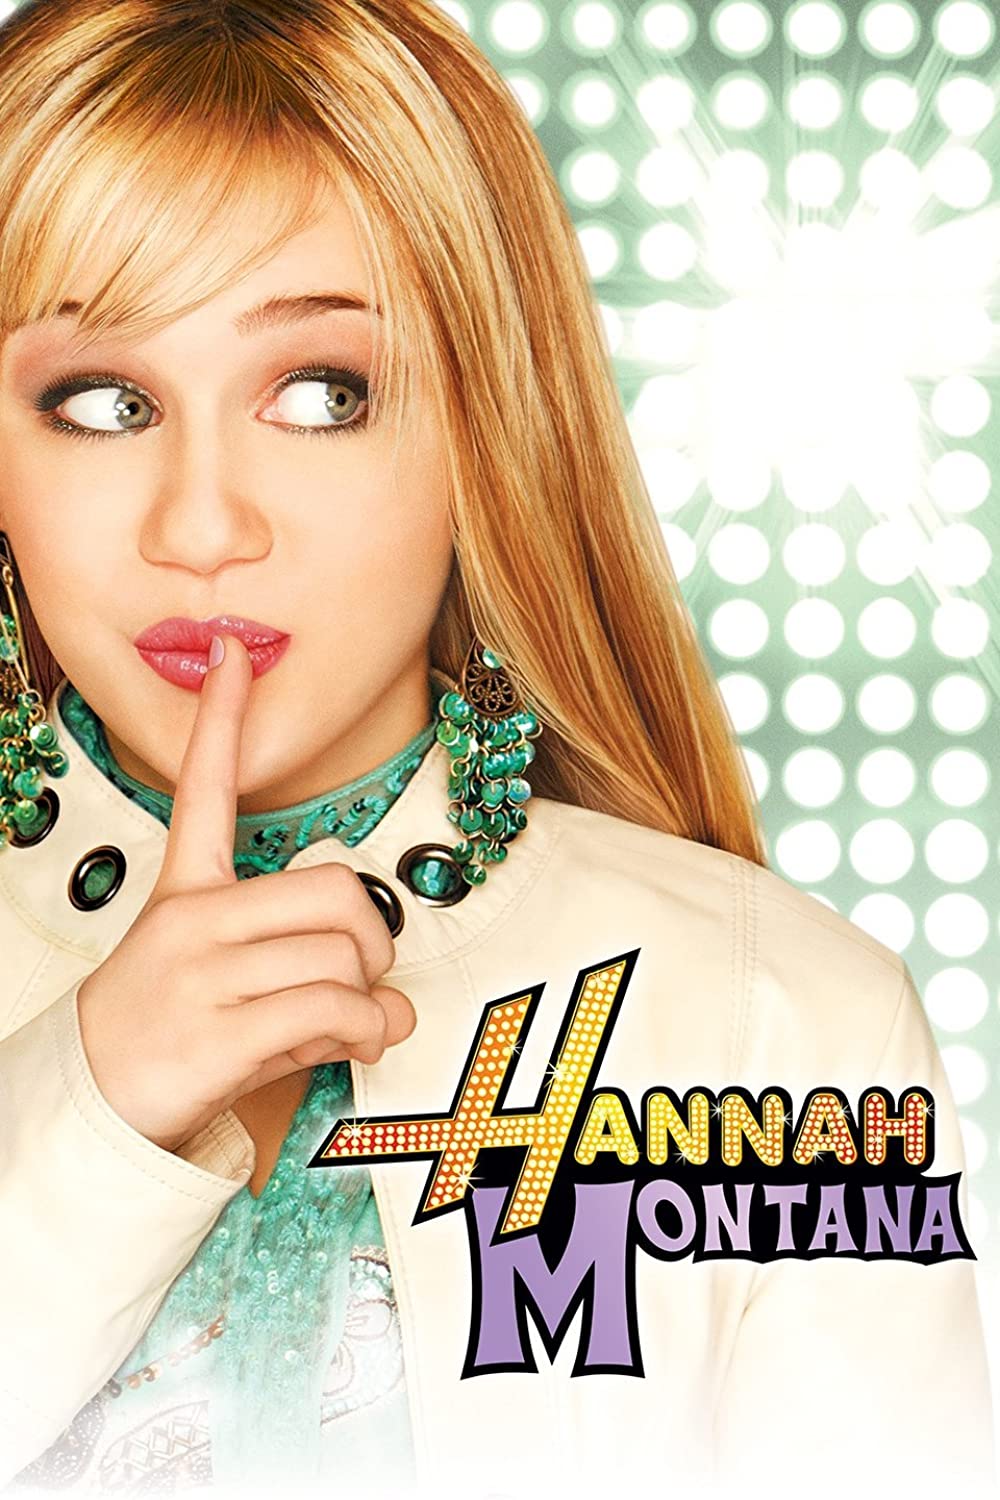 Filmbeschreibung zu Hannah Montana